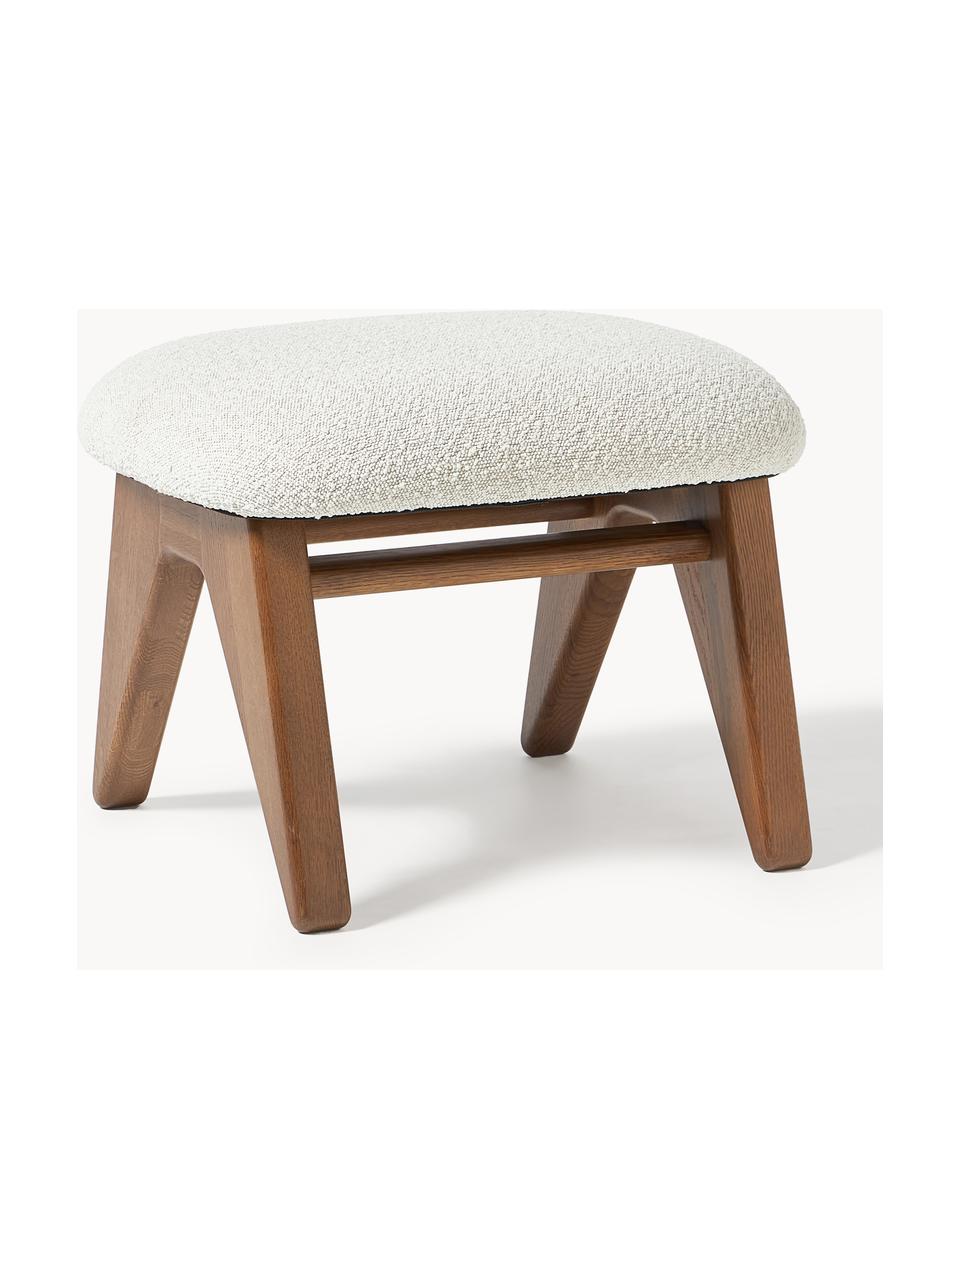 Bouclé stolička Shenay, Bílá, dubové dřevo tmavě hnědě lakované, Š 55 cm, V 45 cm